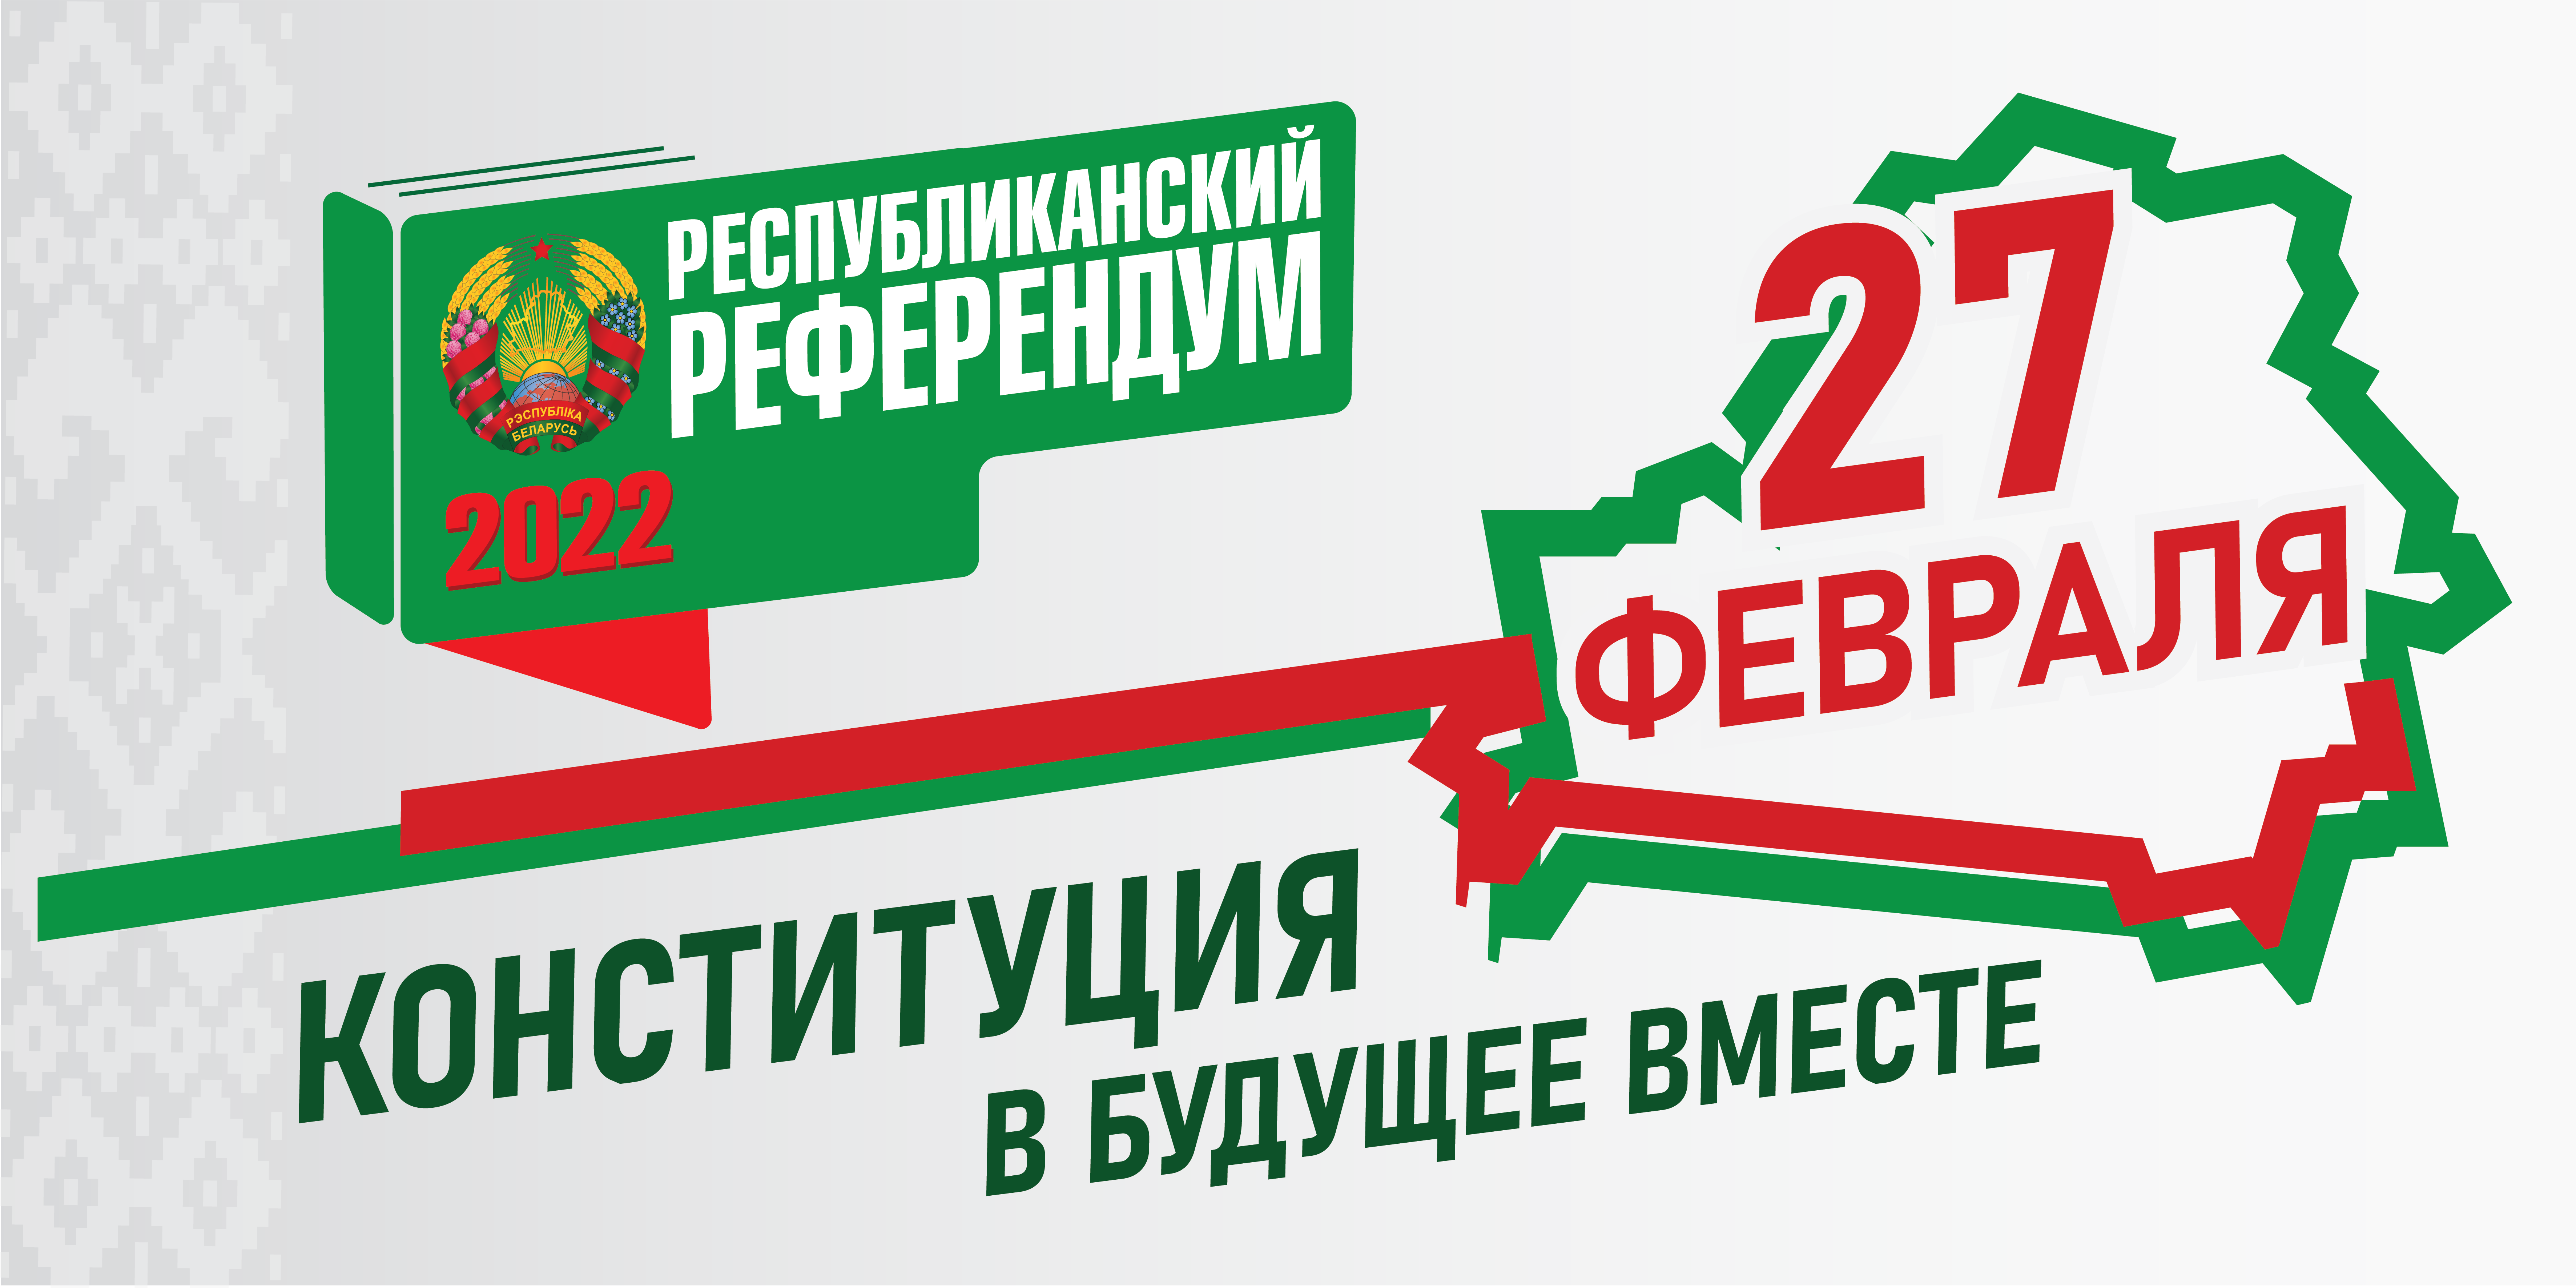 Что изменится в беларуси с 1 апреля. Референдум 2022. Референдум в РБ В 2022. 27 Февраля референдум. Республиканский референдум это.